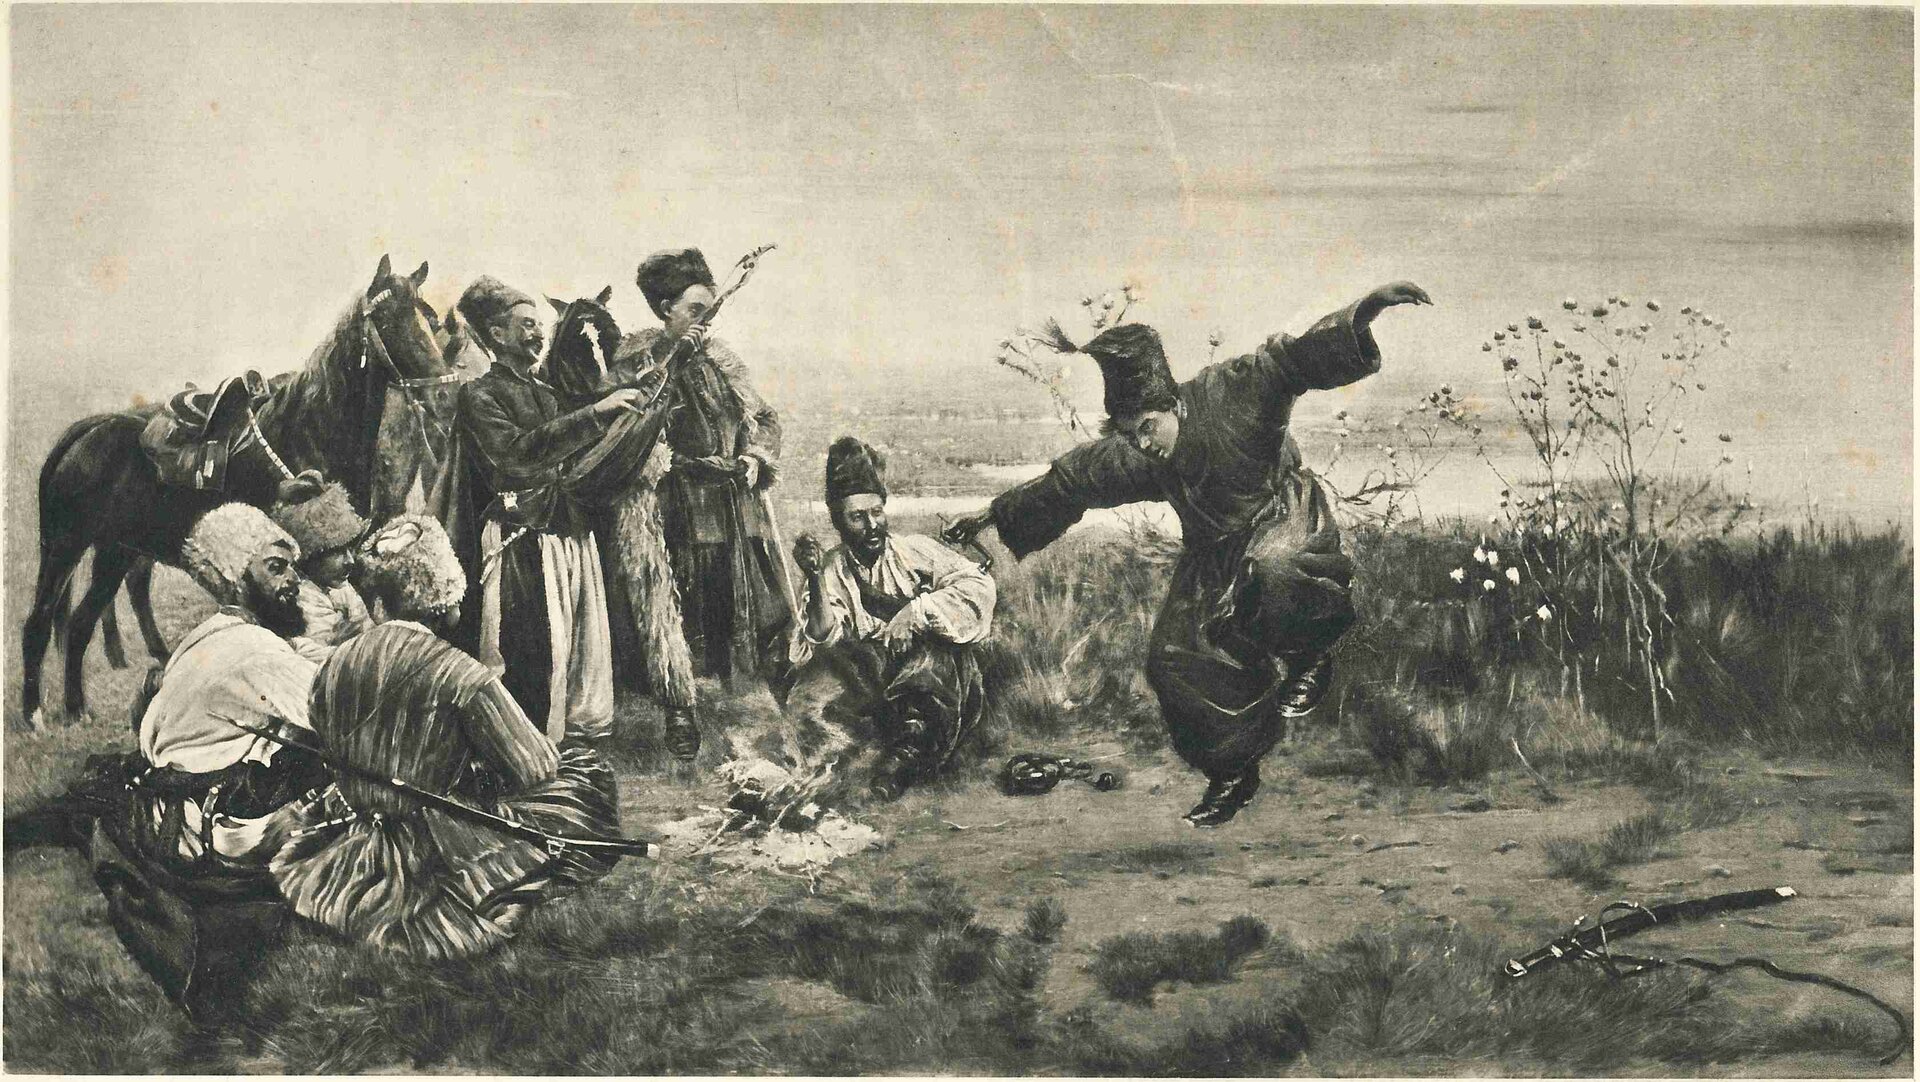 Ilustracja interaktywna przedstawia obraz „Taniec Kozaków”, autorstwa Stanisława Masłowskiego. Dzieło ukazuje grupę mężczyzn znajdujących się na dzikim stepie. Główna postać podskakuje wykonując taniec ludowy. Pozostali kozaccy przyglądają się mężczyźnie.  